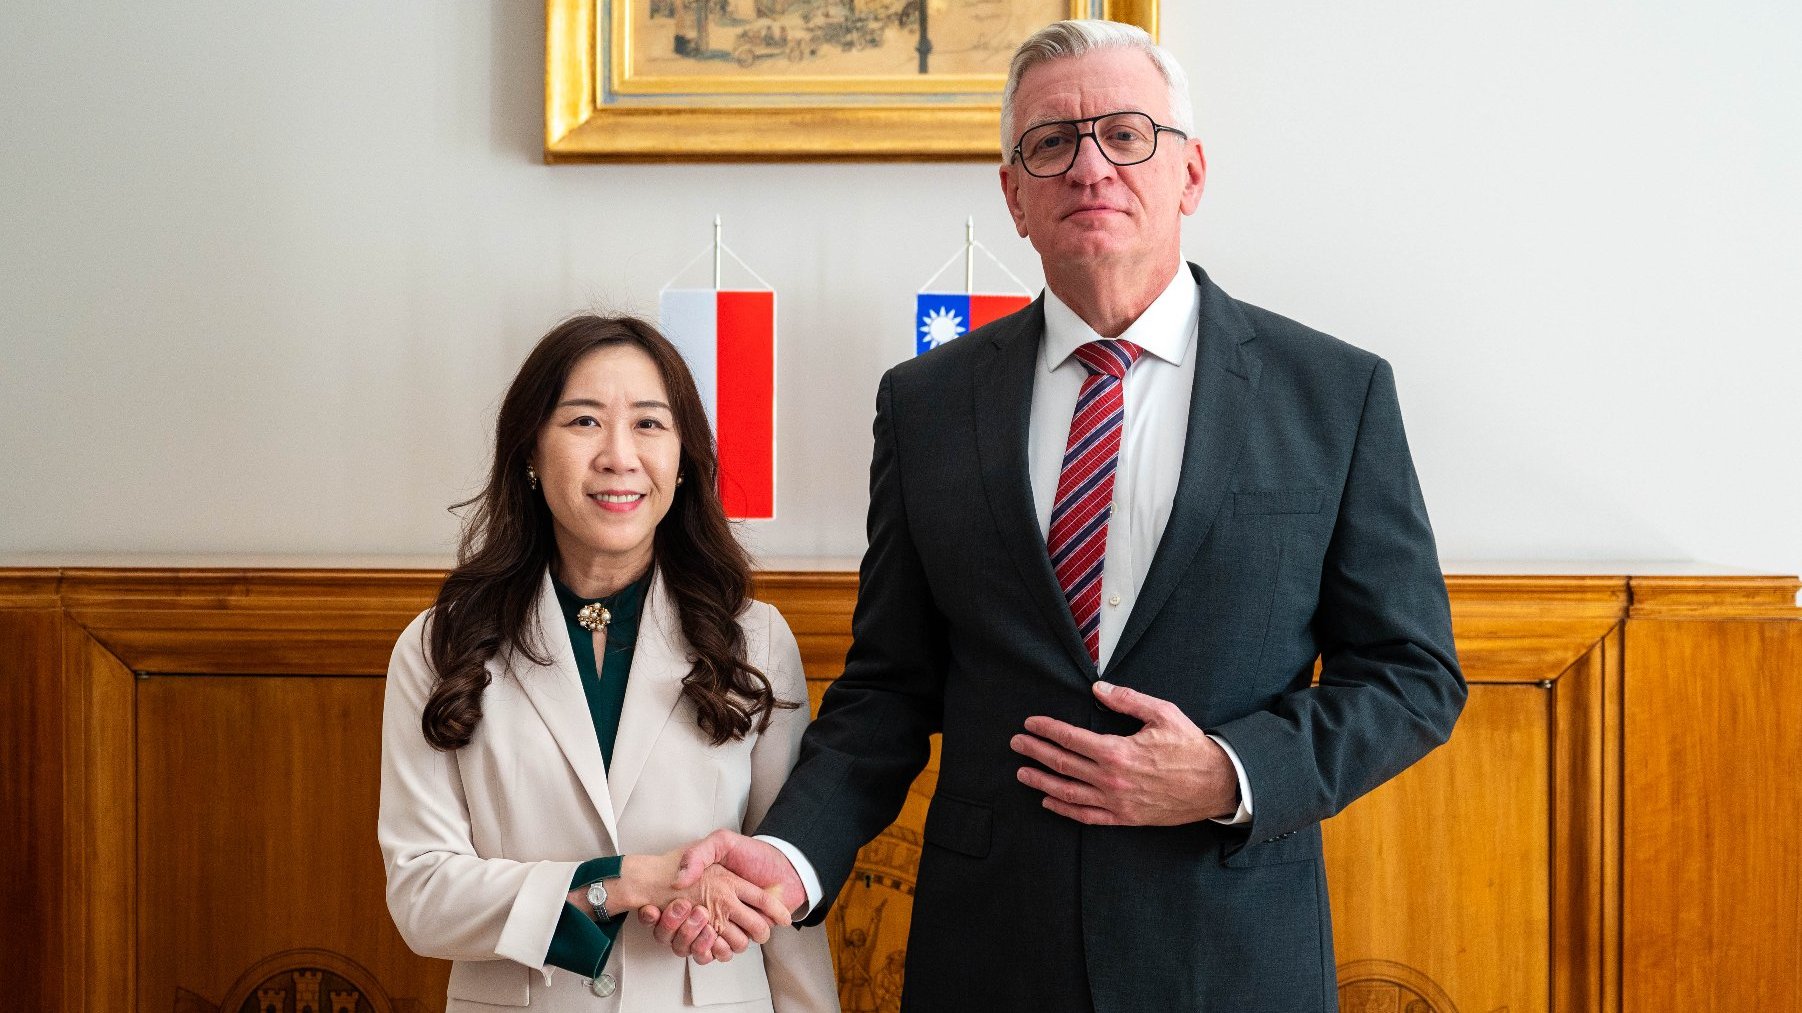 Na zdjęciu ambasador Tajwanu i prezydent Poznania podają sobie dłonie